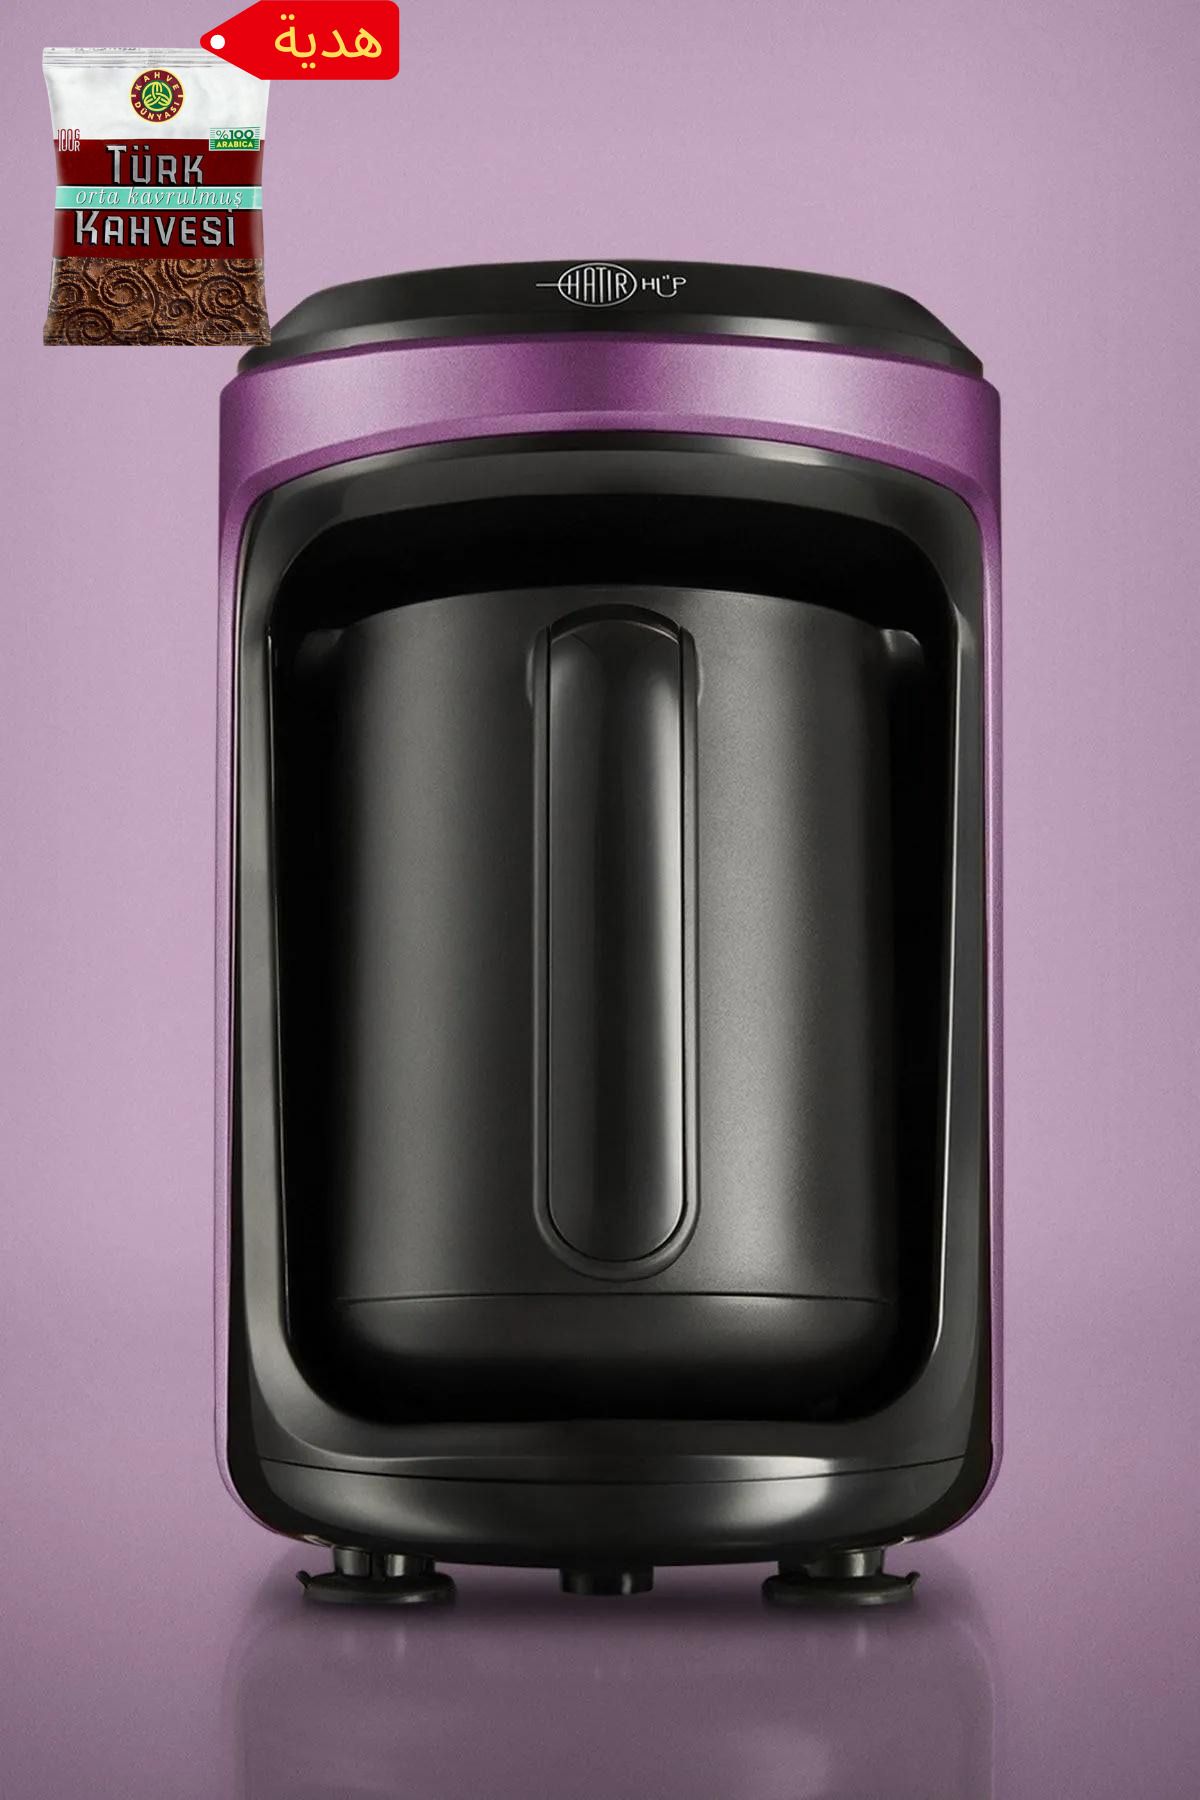 Karaca Hatır Hüp Türk Kahve Makinesi Glossy Violet Türk Kahvesi Hediyeli